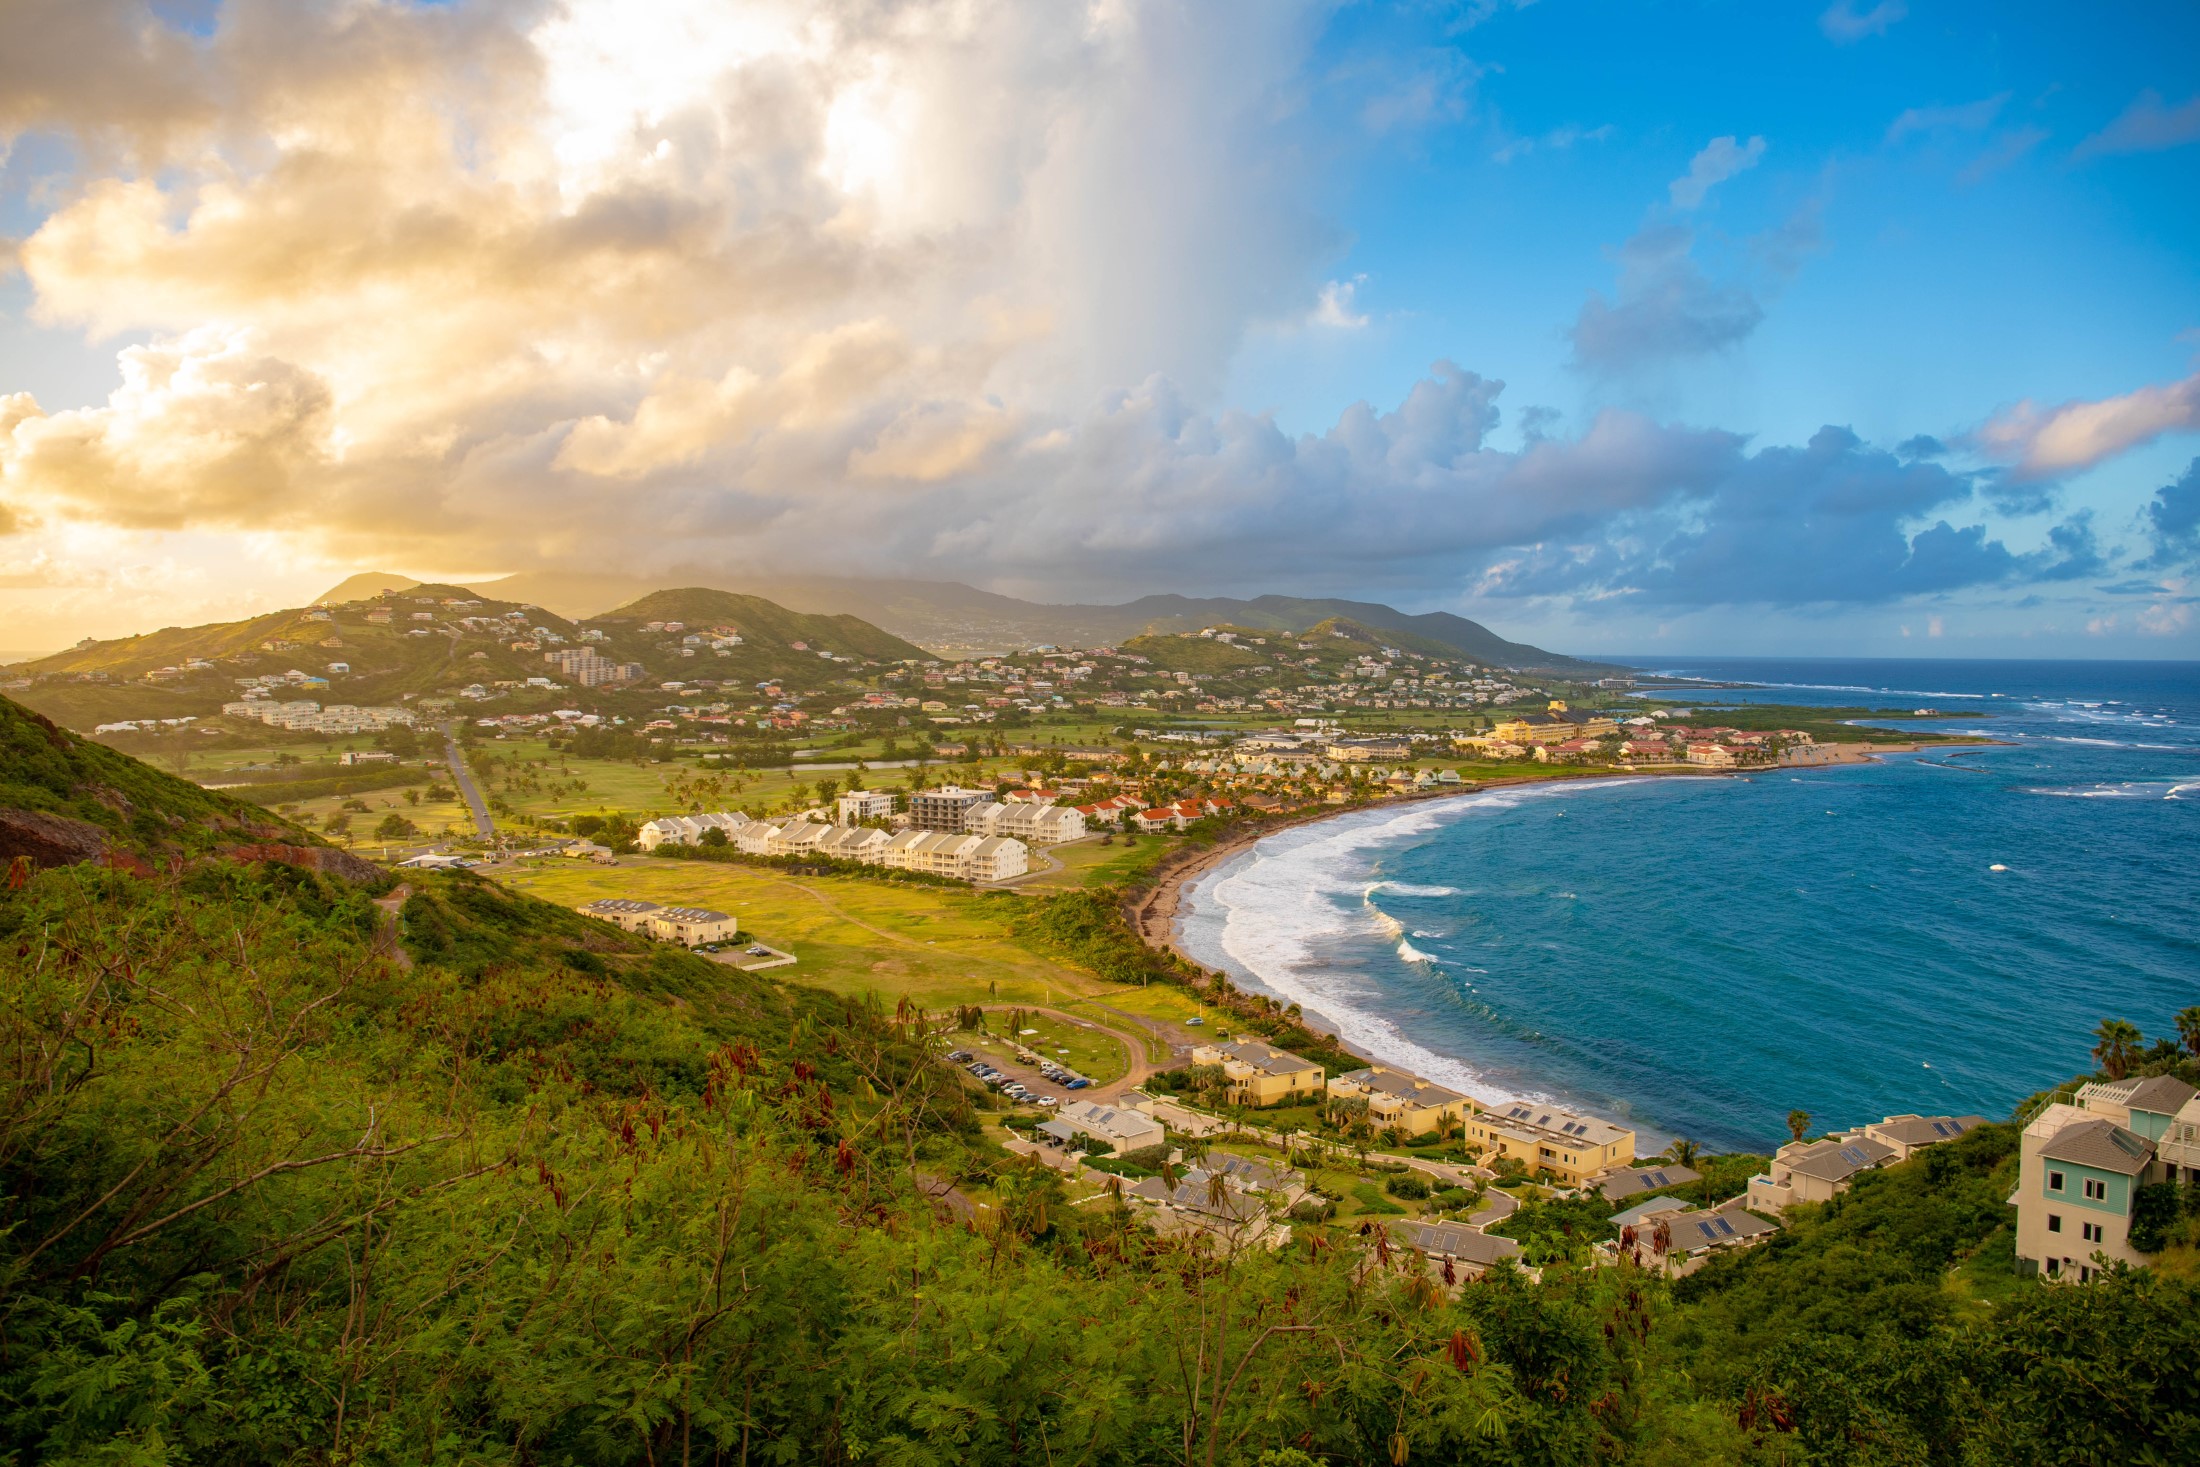 Frigate Bay to nazwa dwóch położonych blisko siebie zatok na wyspie Saint Kitts.